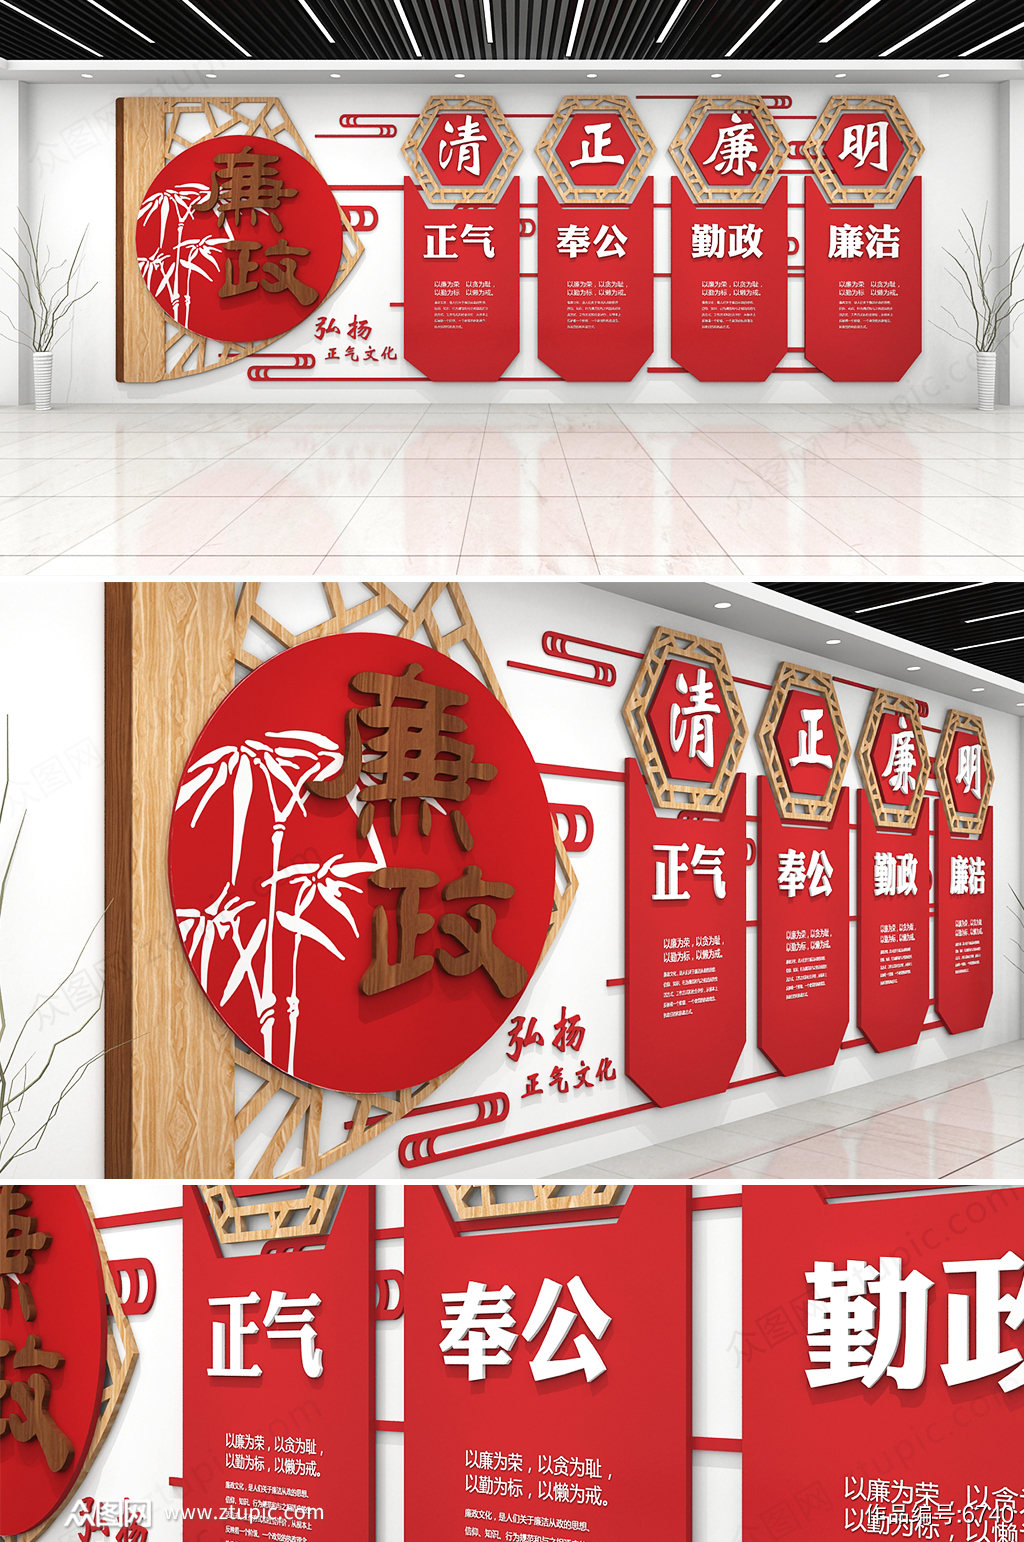 原创红色中国风古典党建文化墙廉政文化墙设计素材